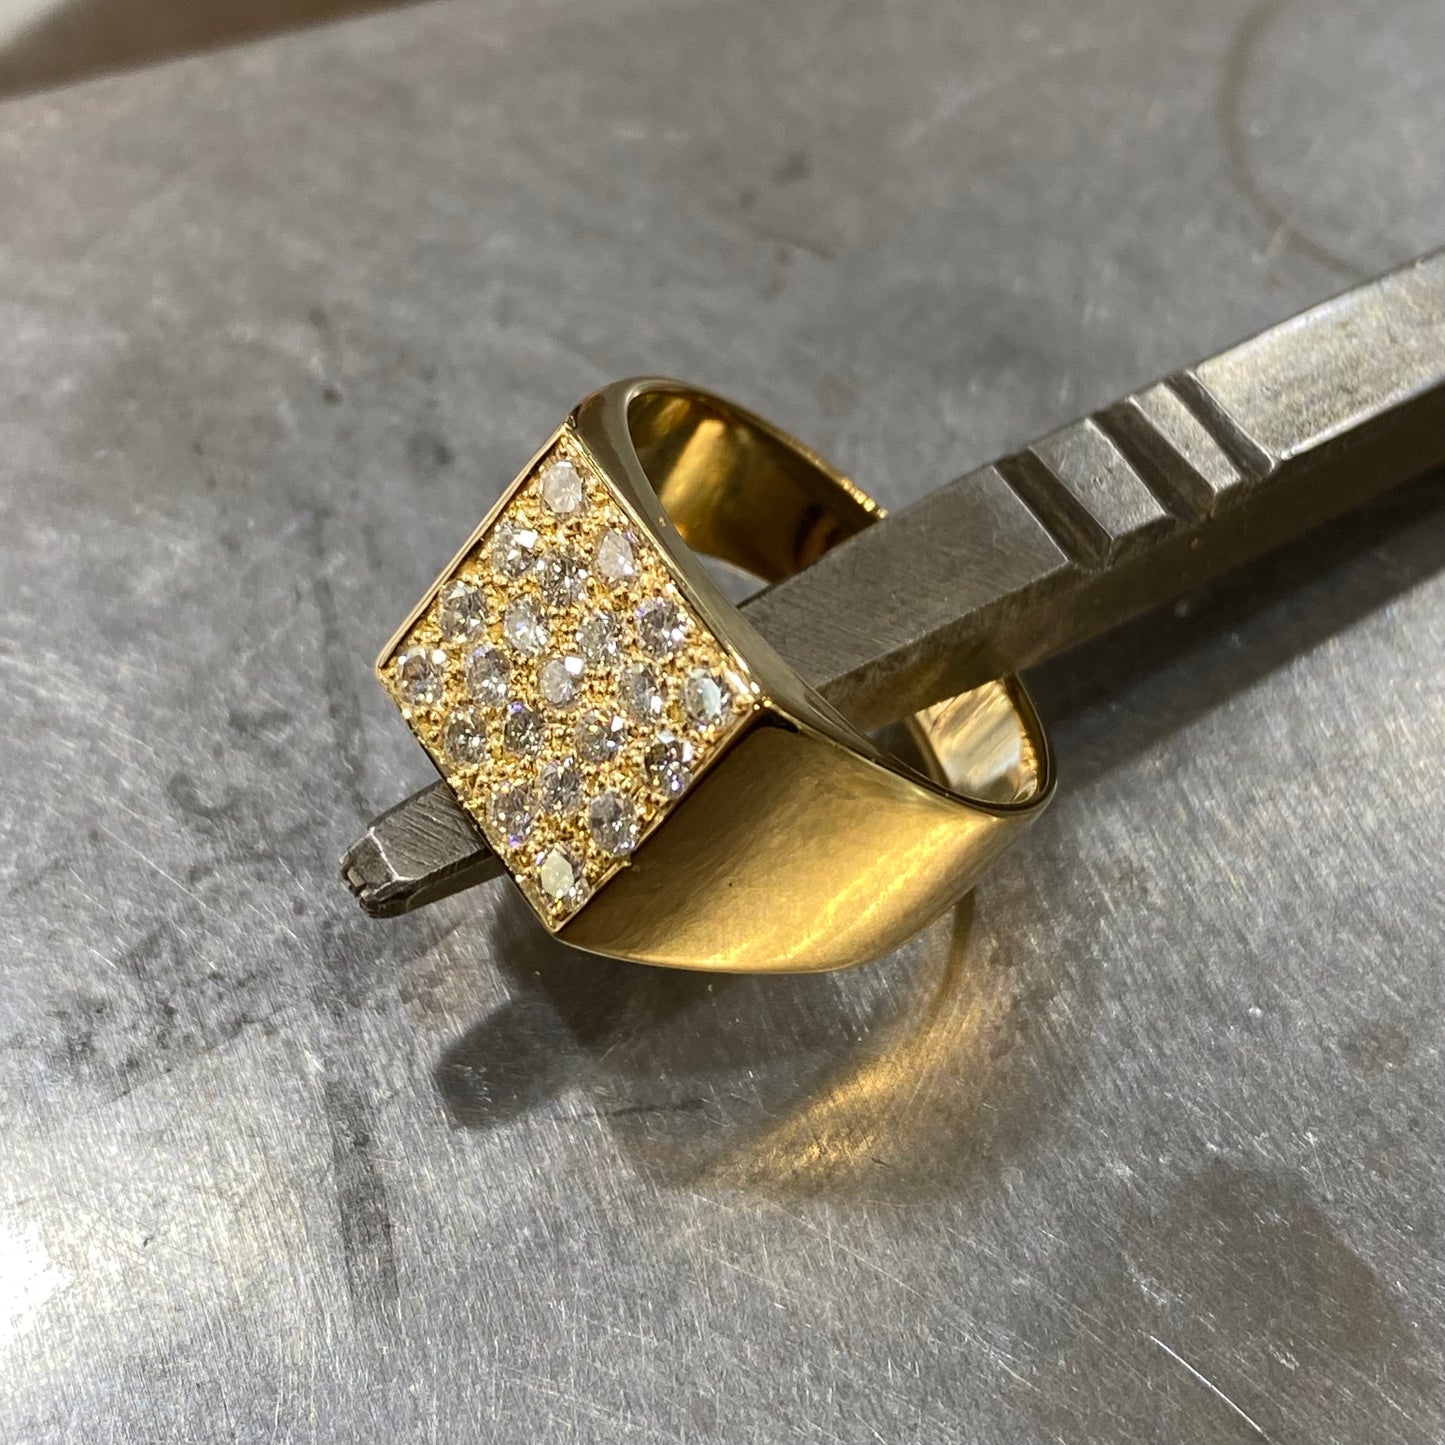 Bague Chevalière Pavée - Or Jaune 750 & Diamants